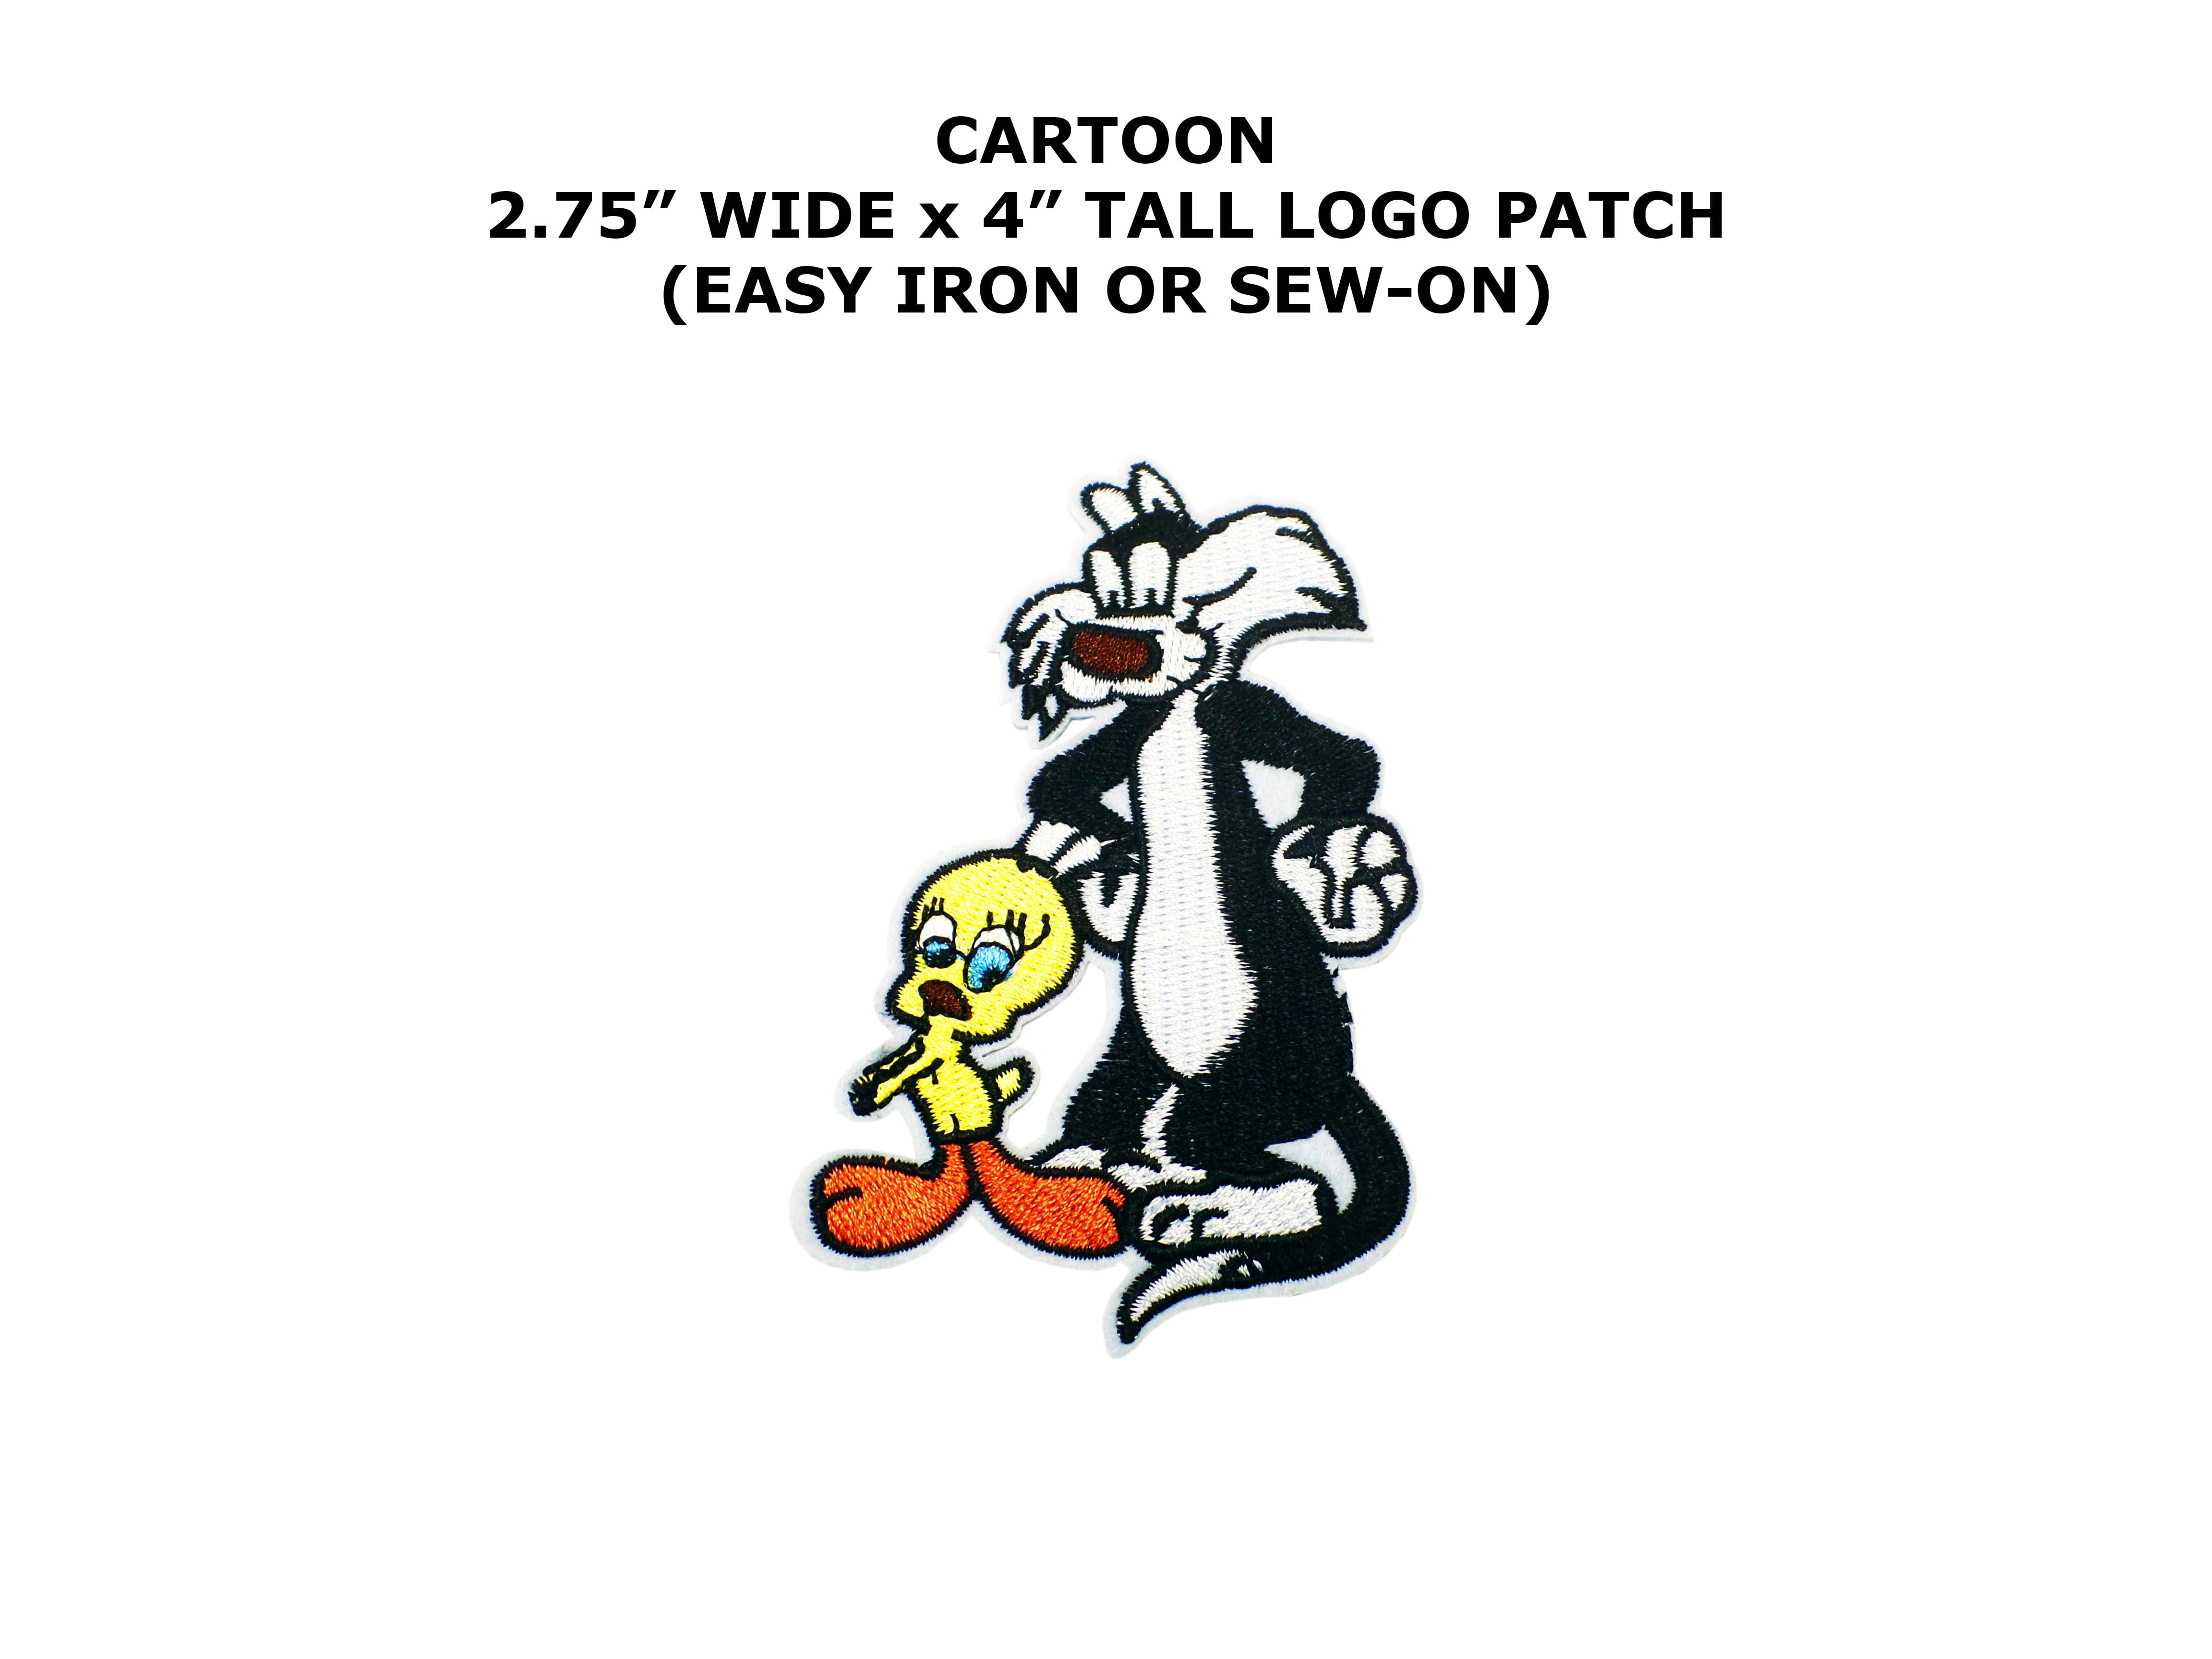 NEW UNUSED Looney Tunes Tweety & Sylvester Figure Die-Cut Patch 